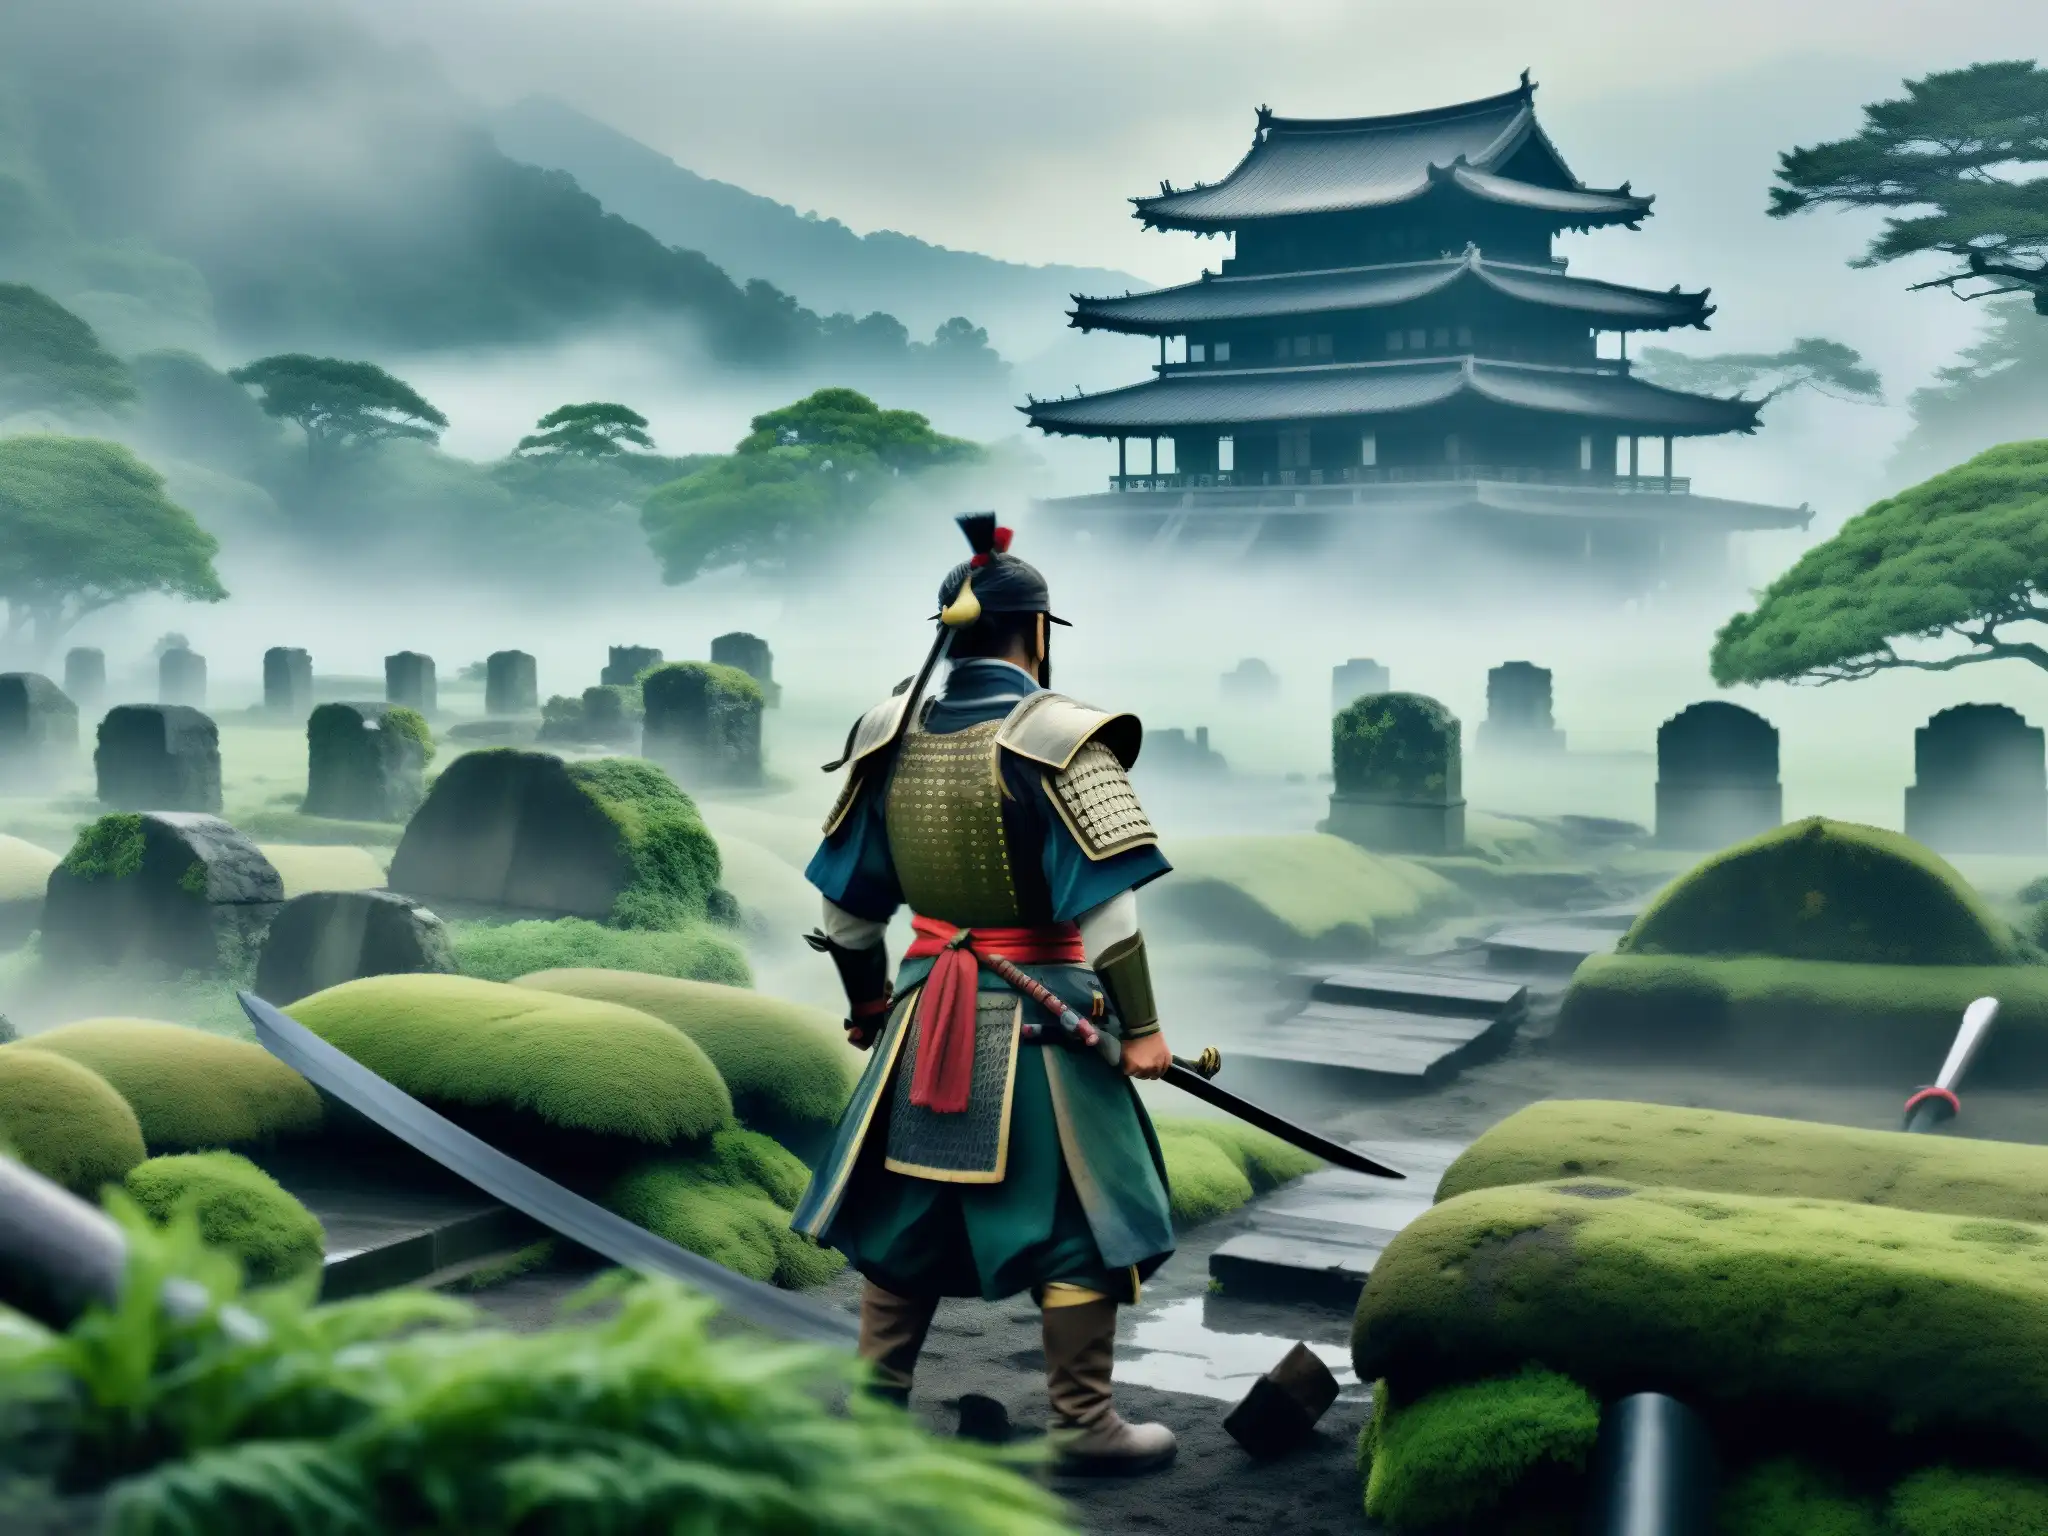 Imagen de apariciones fantasma de antiguas batallas de samuráis, evocando misterio y supernaturalidad en un campo de batalla cubierto de niebla